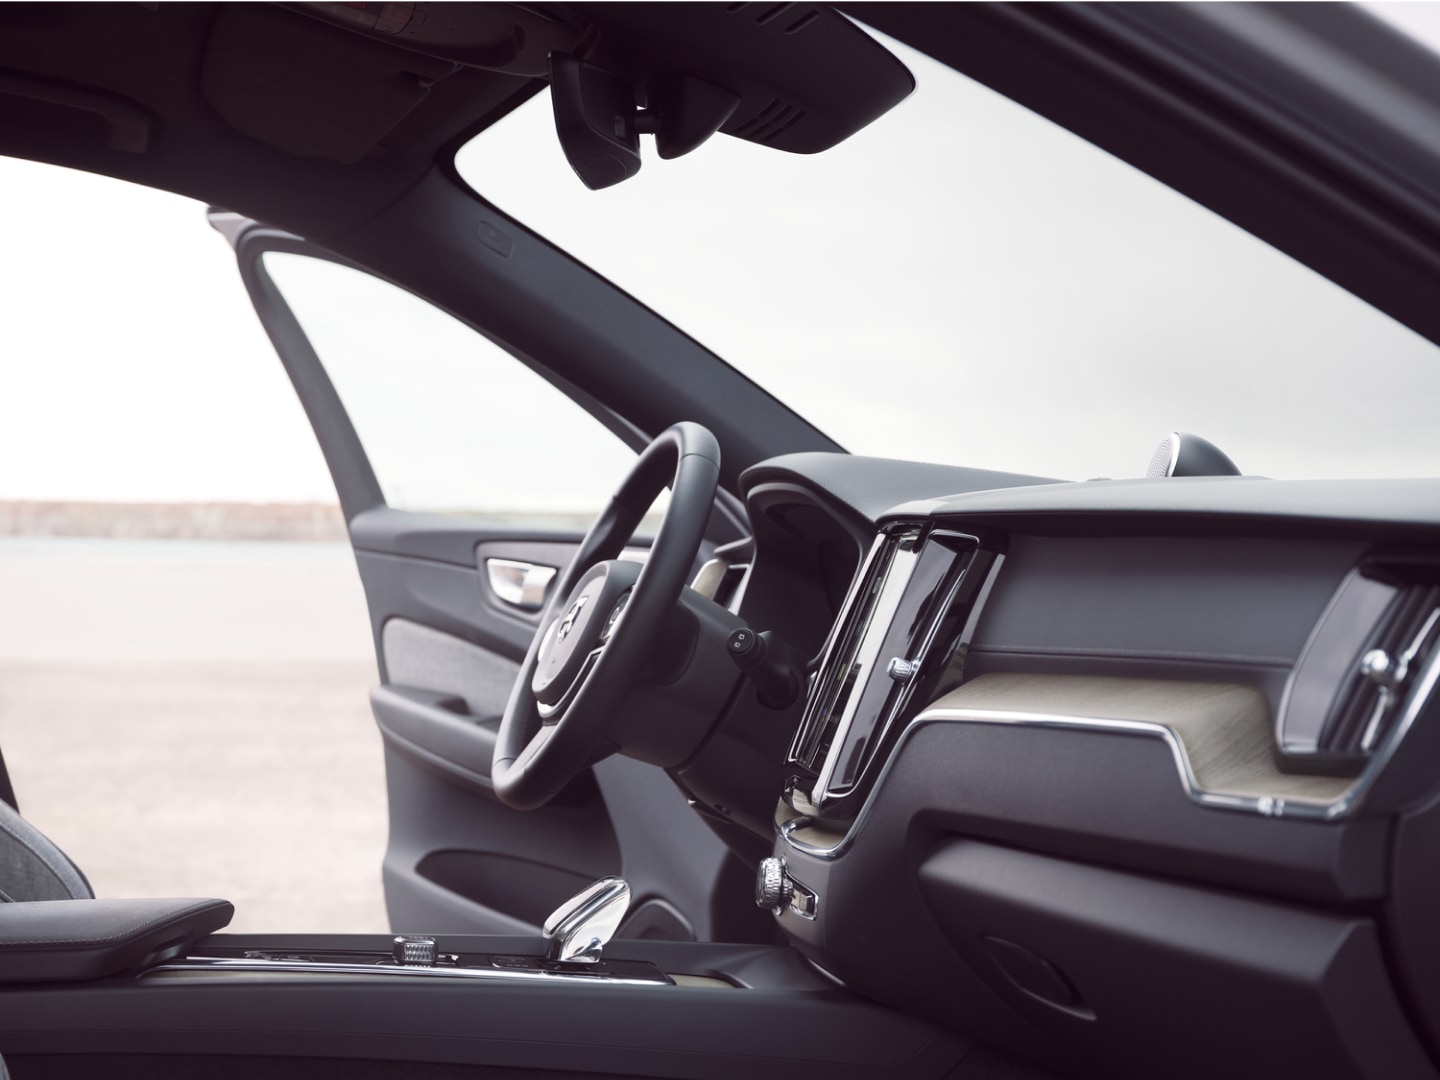 Främre interiör hos en Volvo XC60 laddhybrid med förardörren öppen.